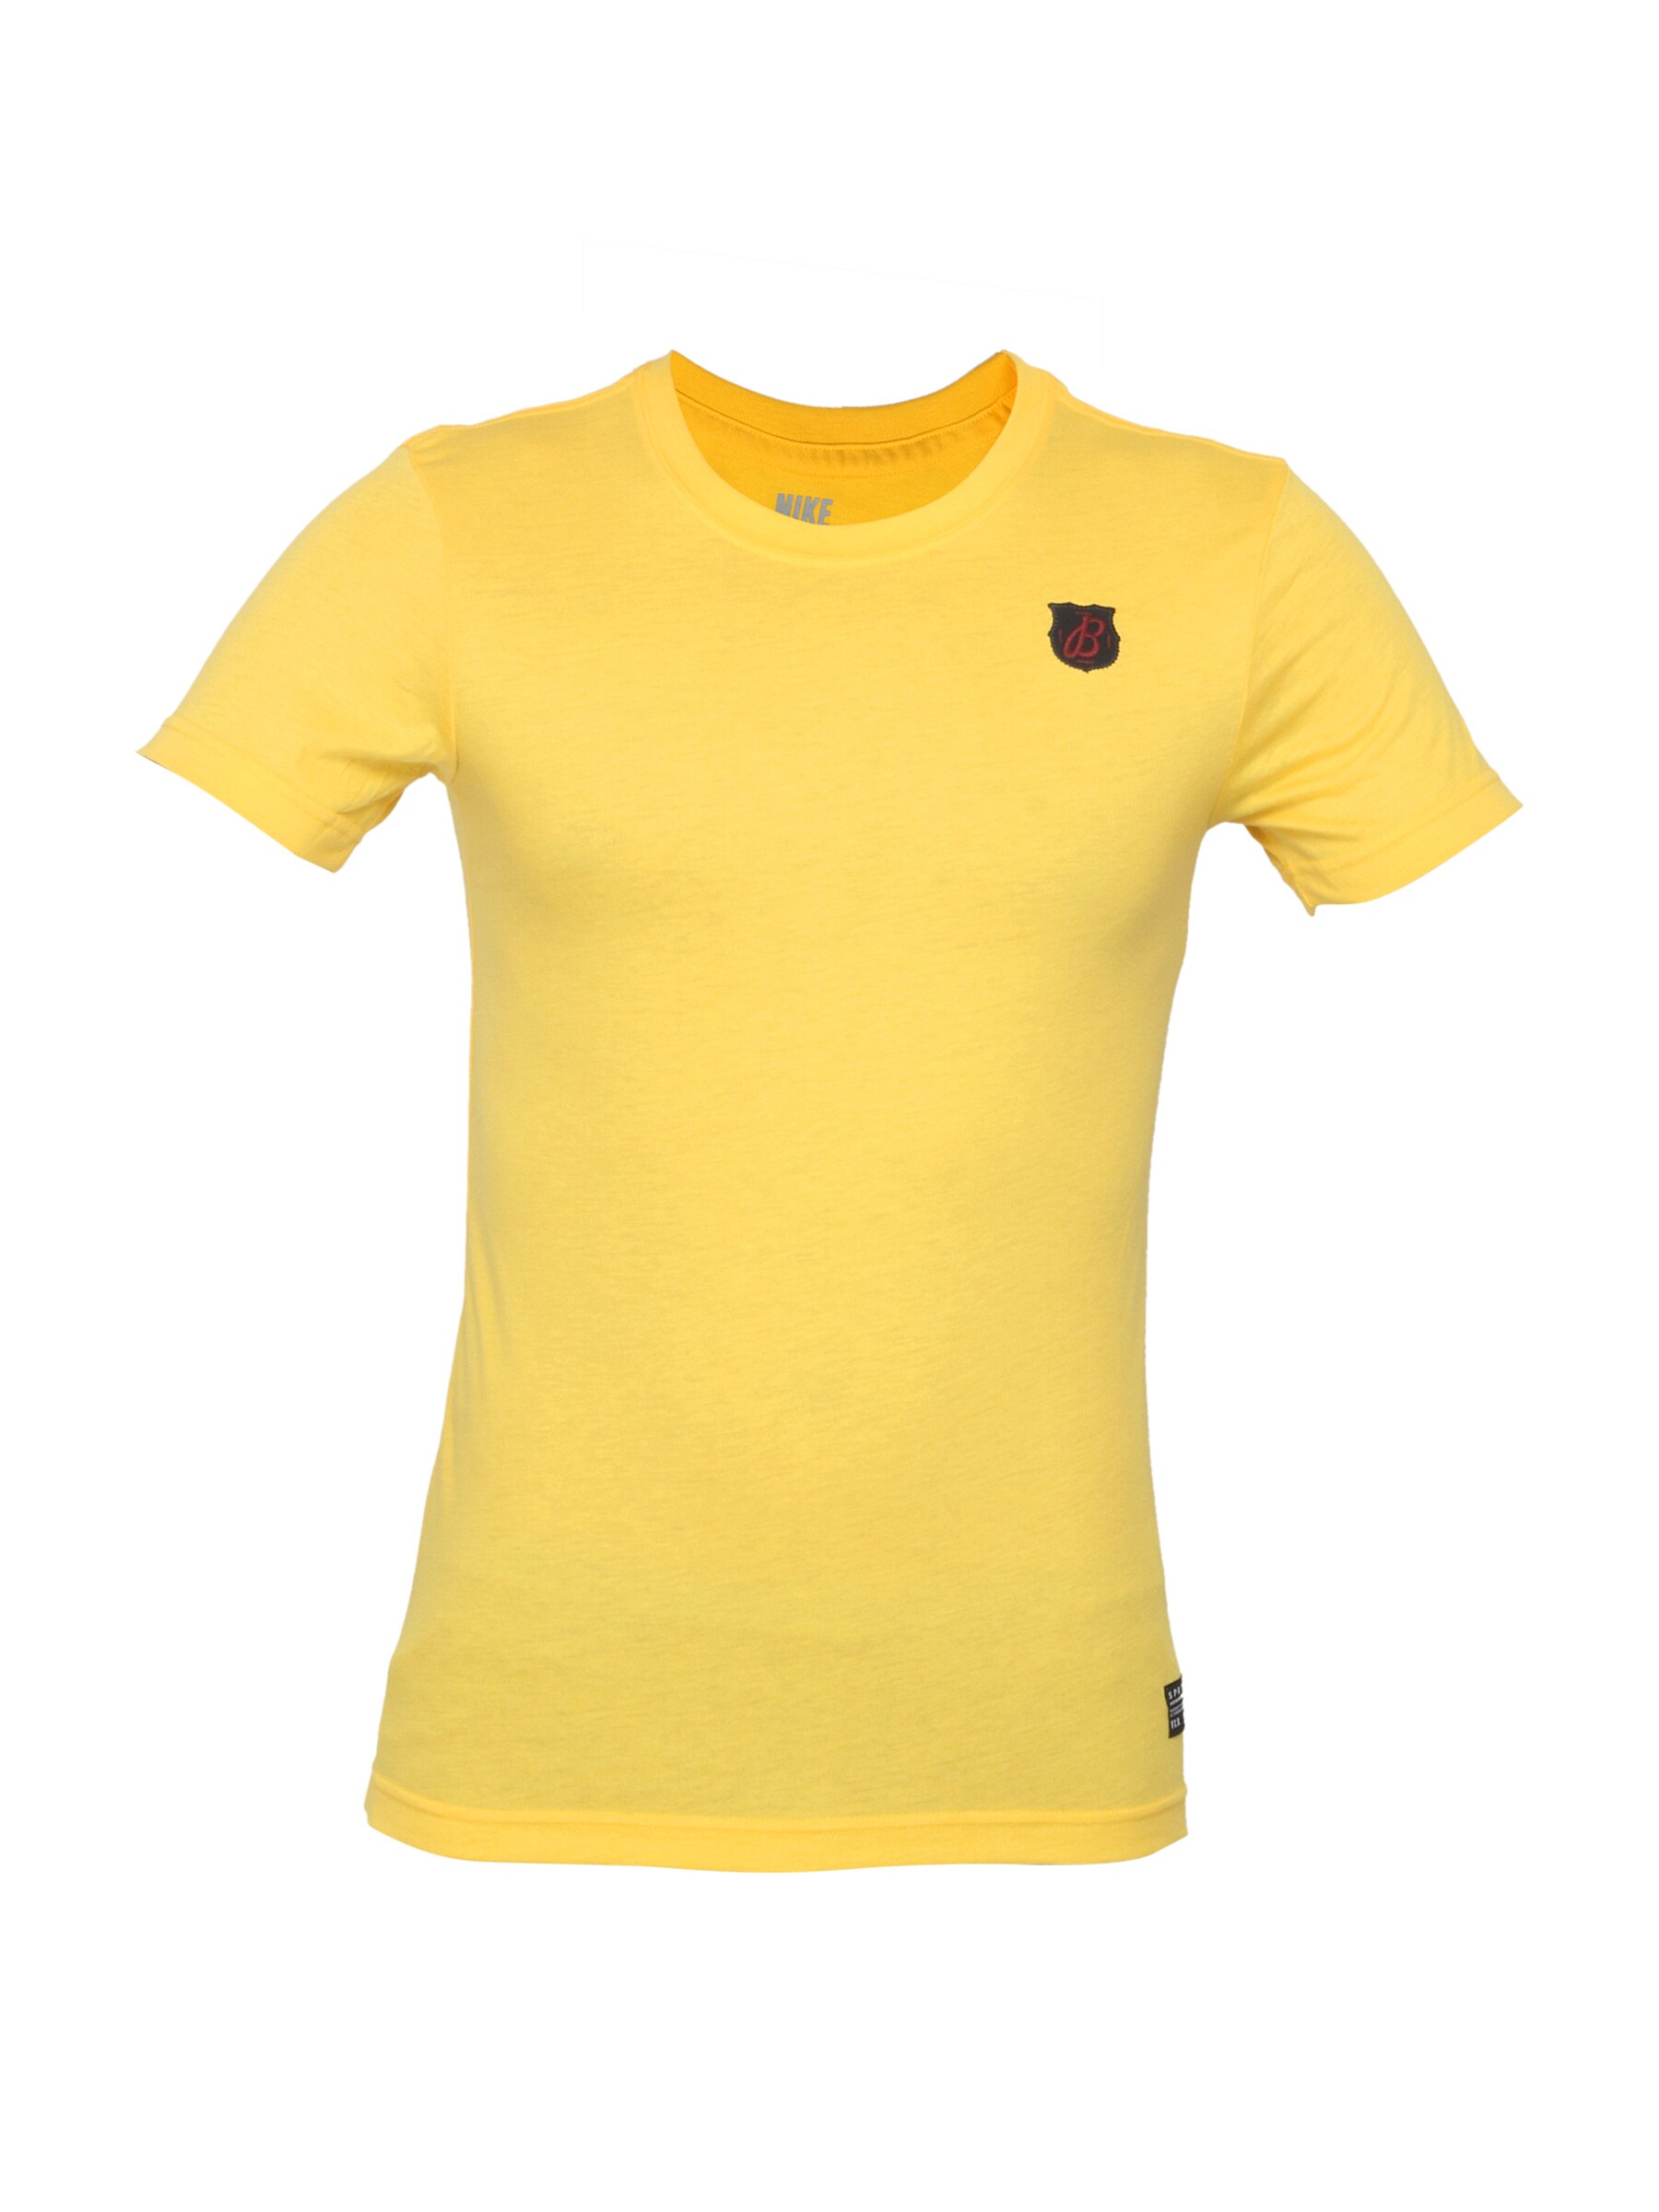 Nike Men Barca Logo Yellow T-shirt